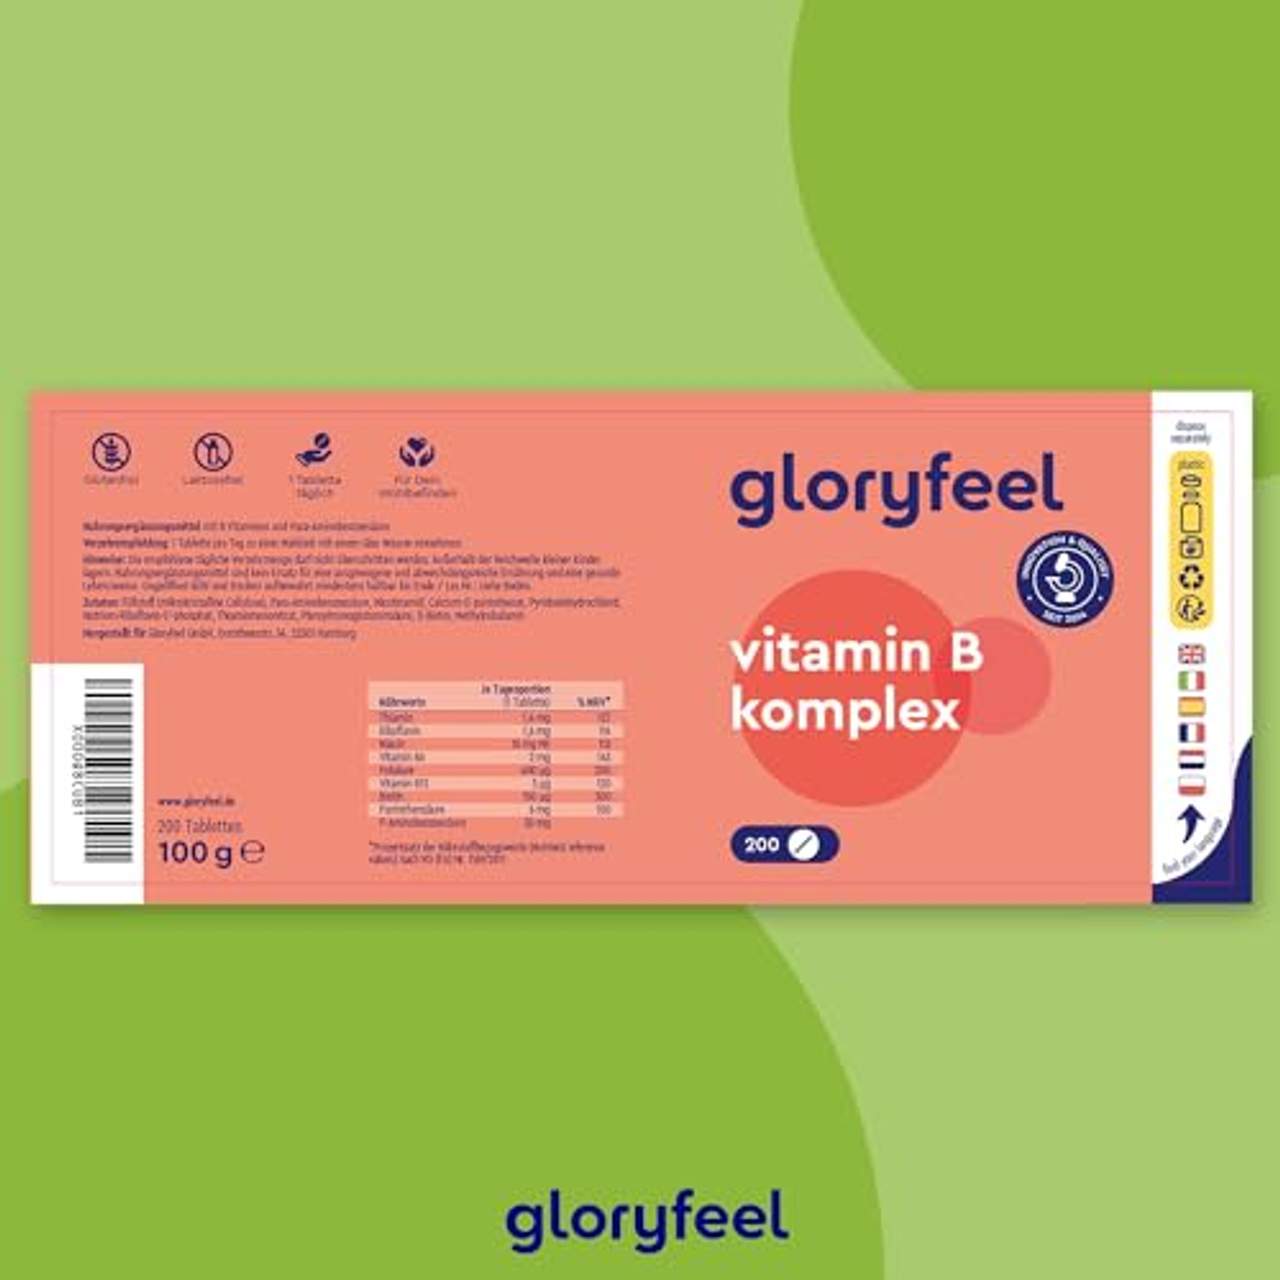 gloryfeel Vitamin B Komplex